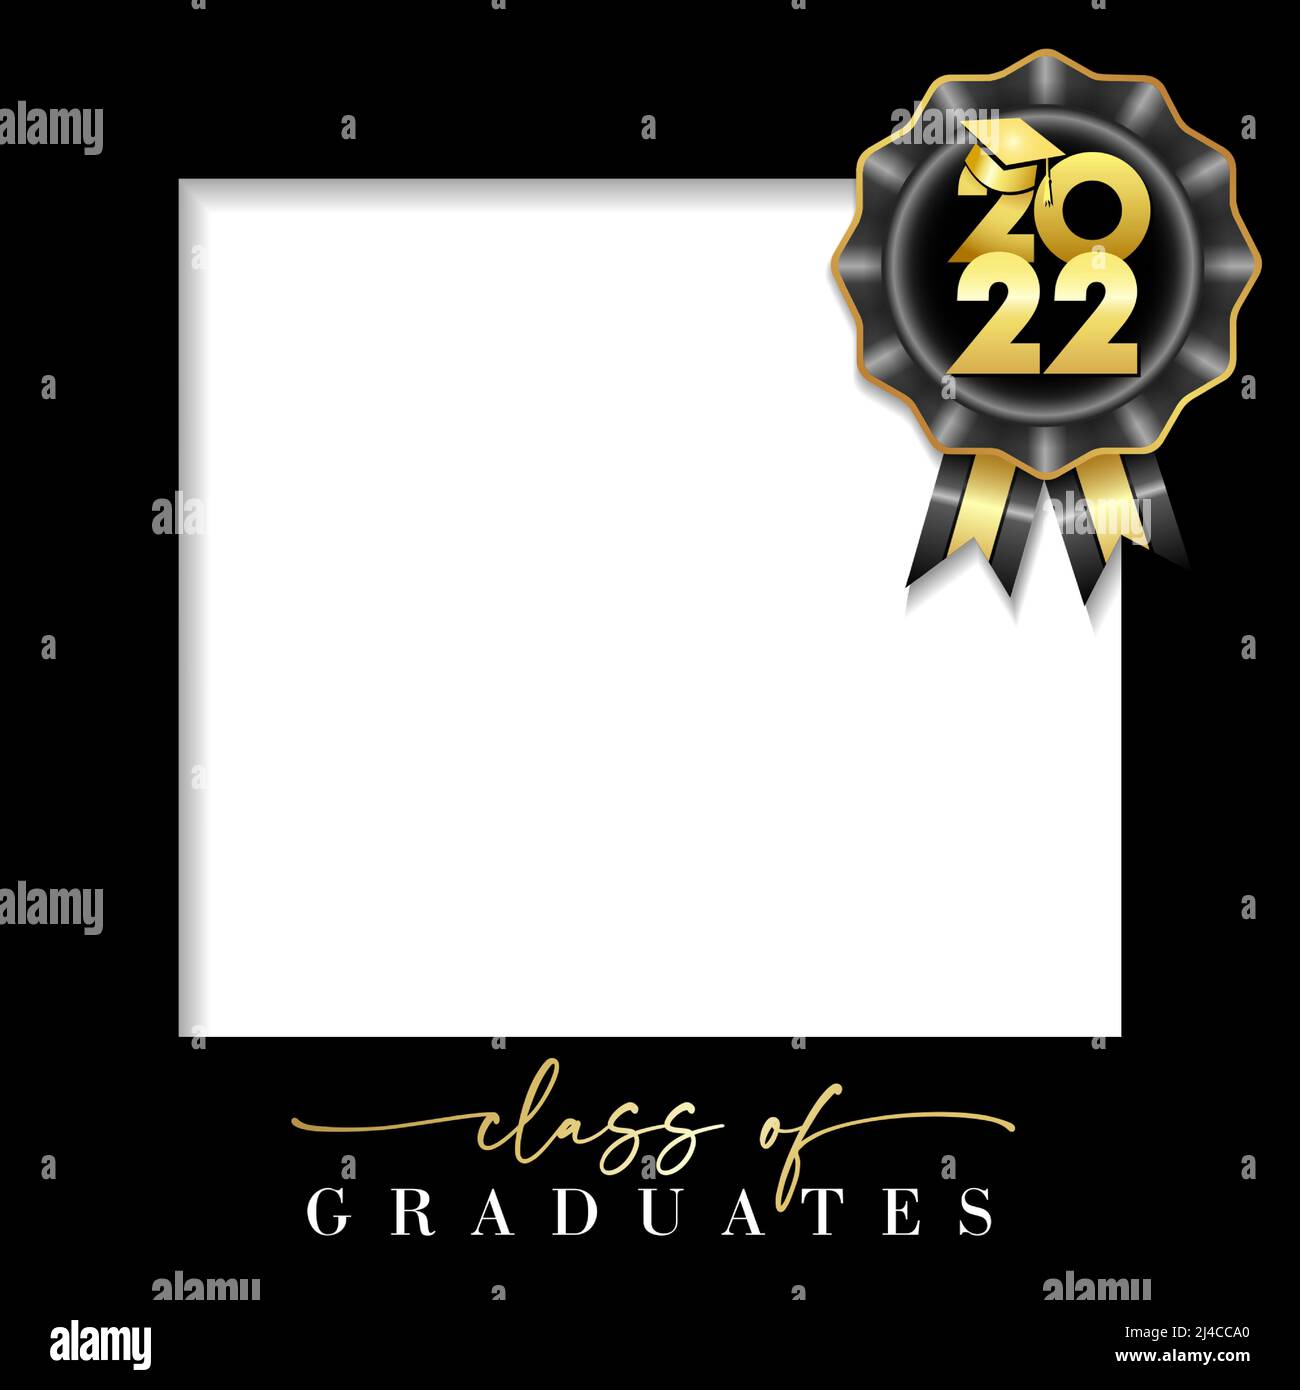 Classe de 2022, cadre photo de graduation. Université ou université finissant avec des congruts avec cadre noir et des nombres d'or avec chapeau académique. Carte vectorielle Illustration de Vecteur